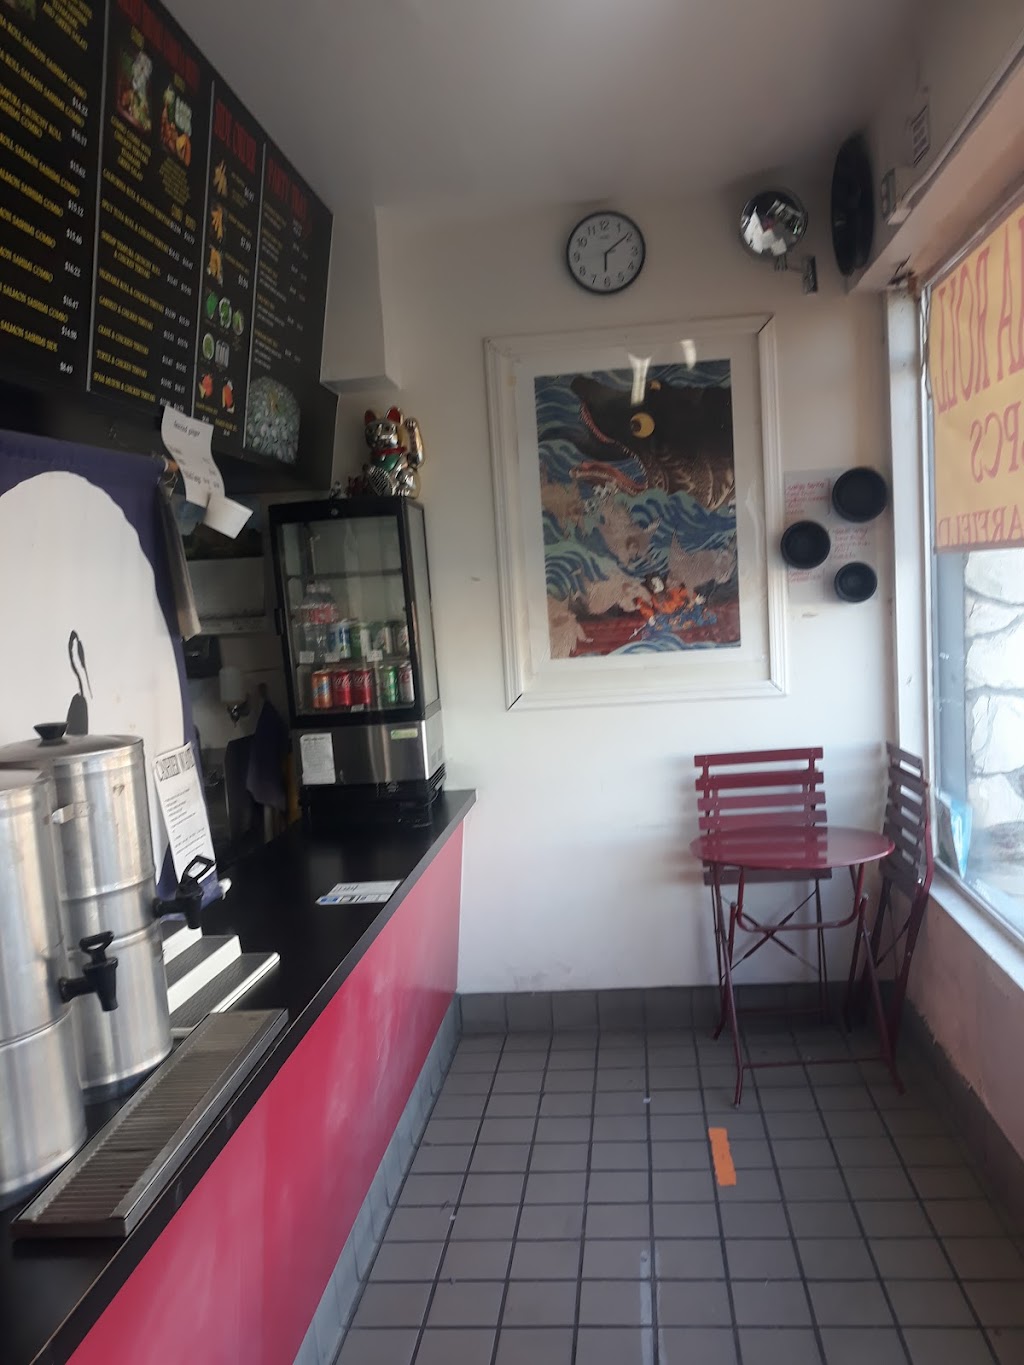 Tsurukame Sushi on Garfield | 2409 S Garfield Ave, Monterey Park, CA 91754, USA | Phone: (323) 490-7054